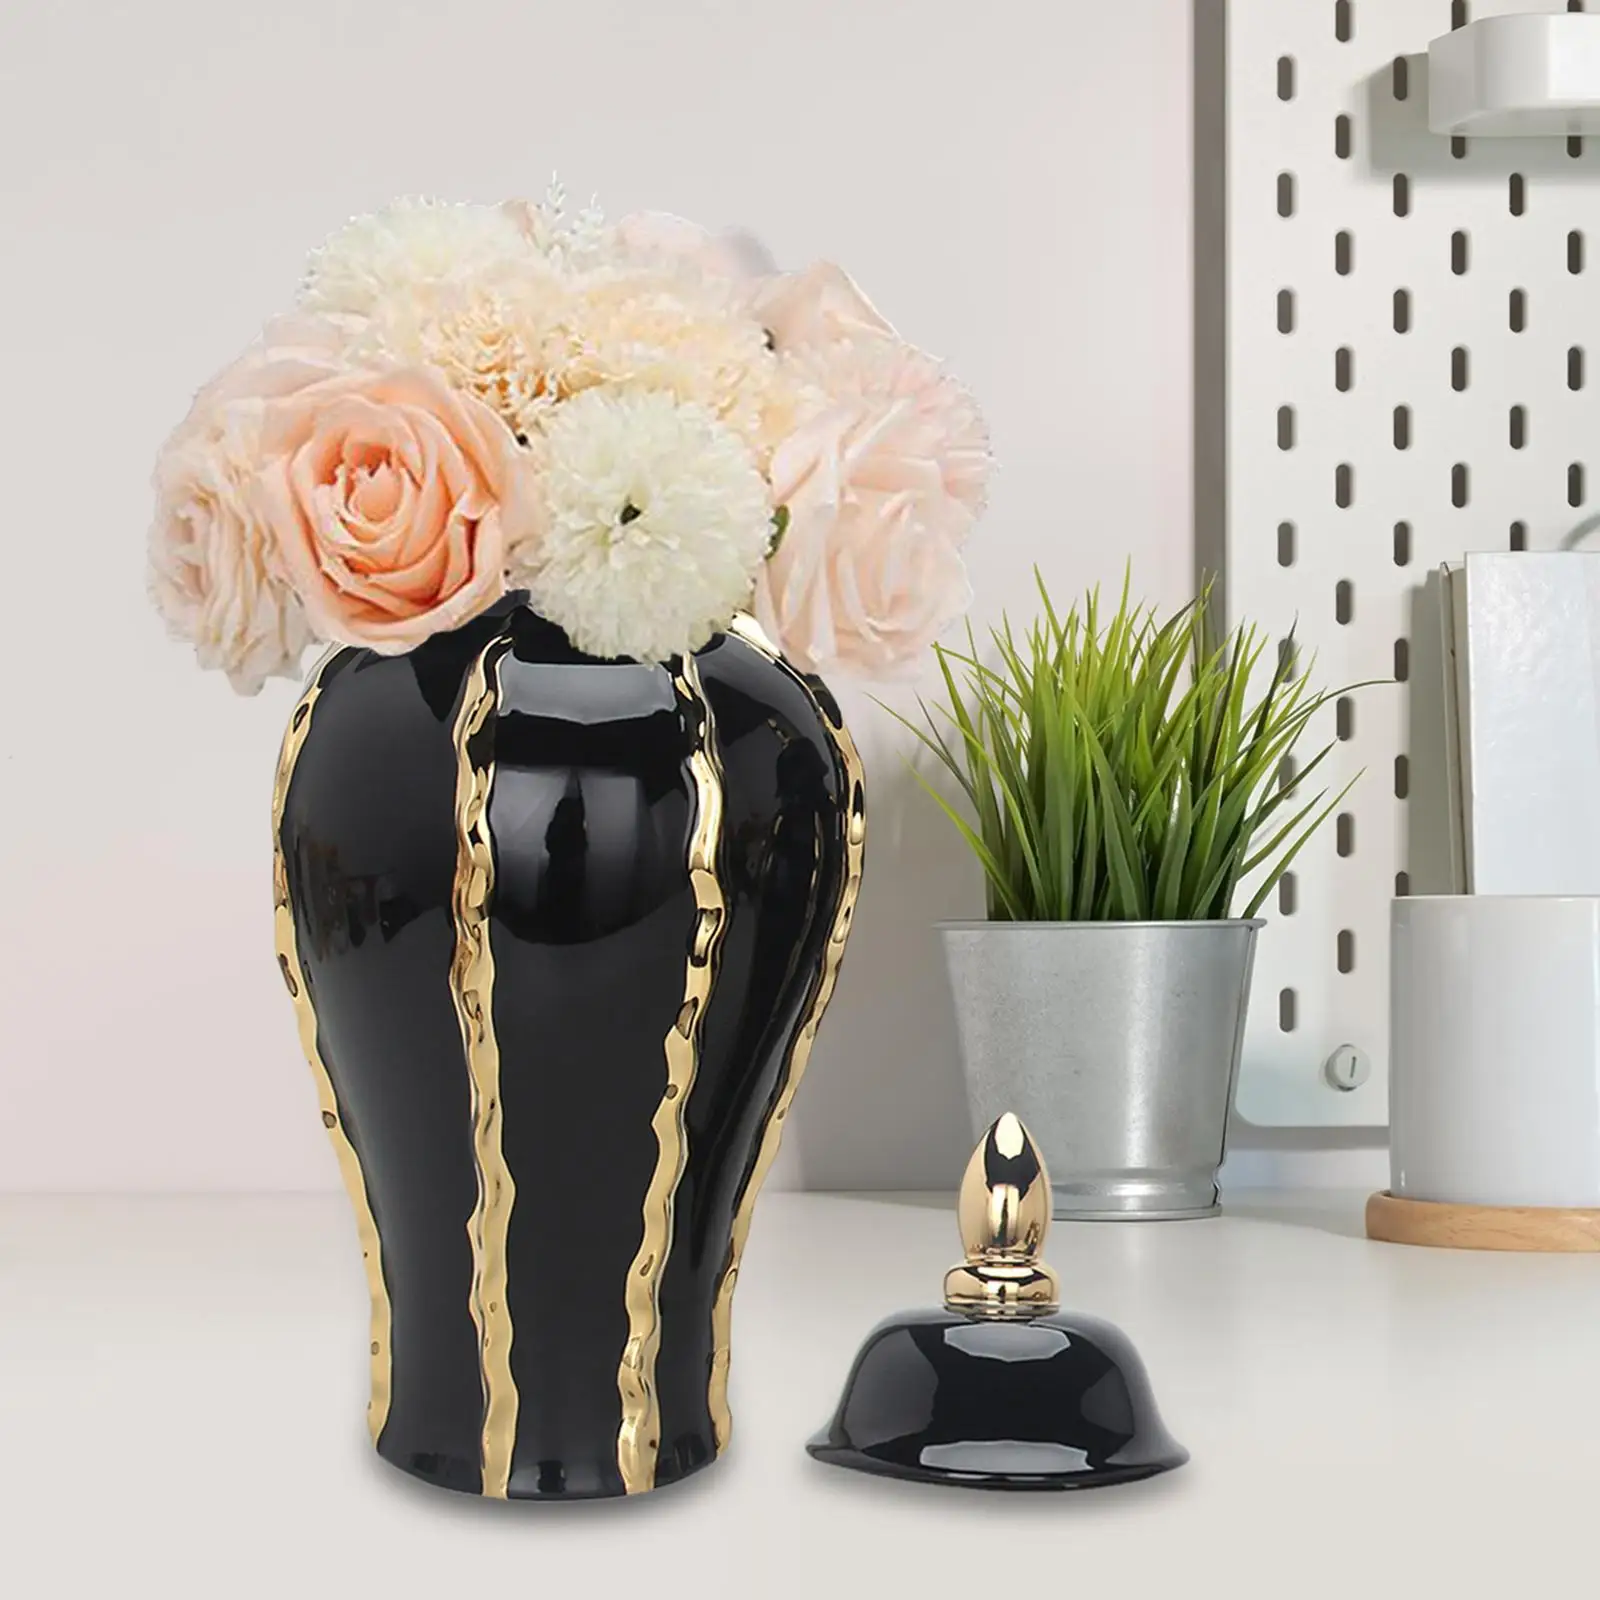 Porcelain Ginger Jar Ornament Decorative Jar Tabletop Ceramic Vase for Bedroom Decor